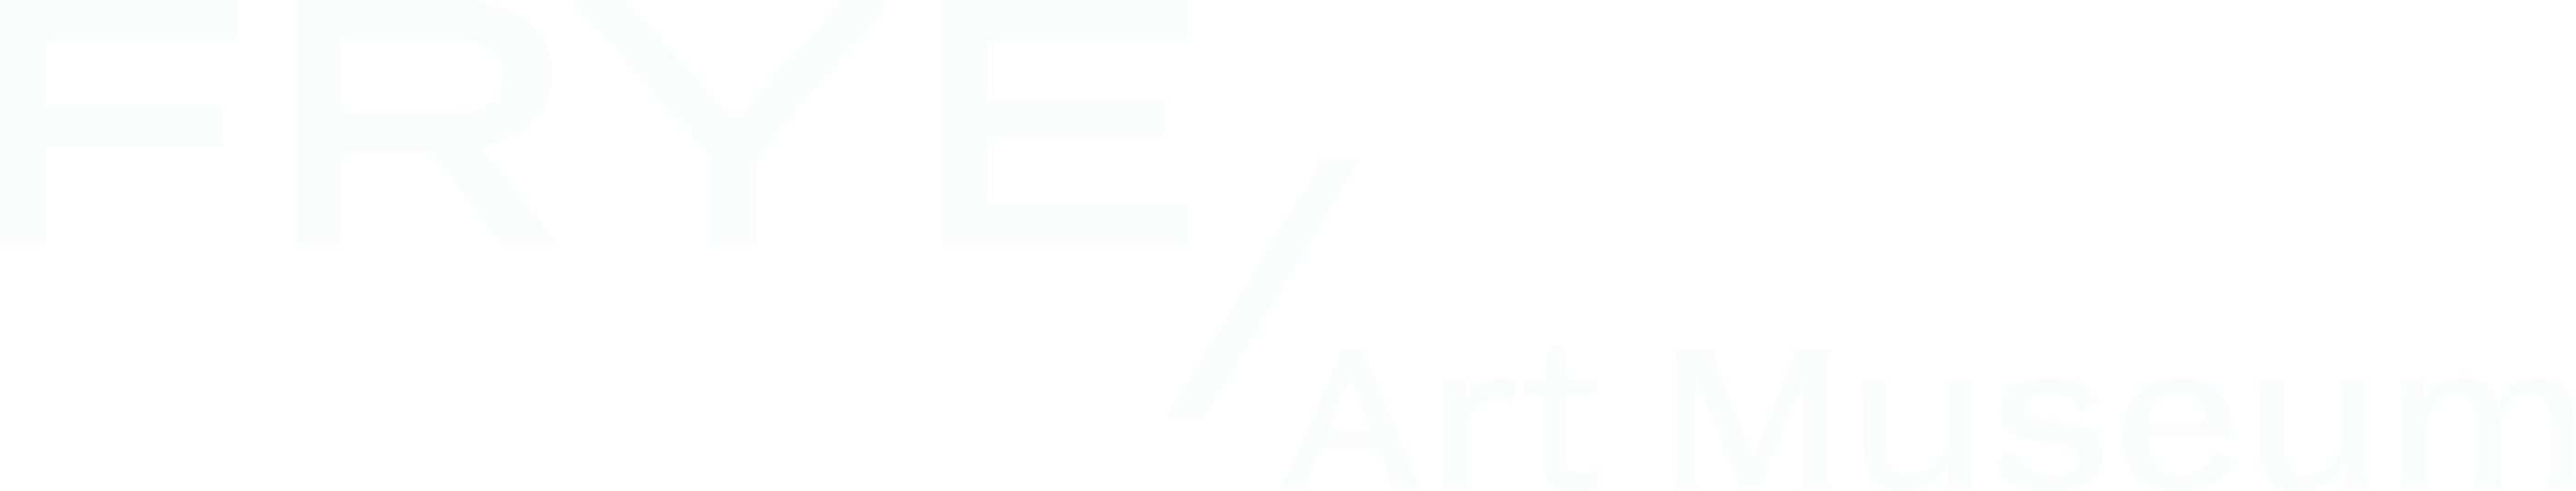 Frye Art Museum logo